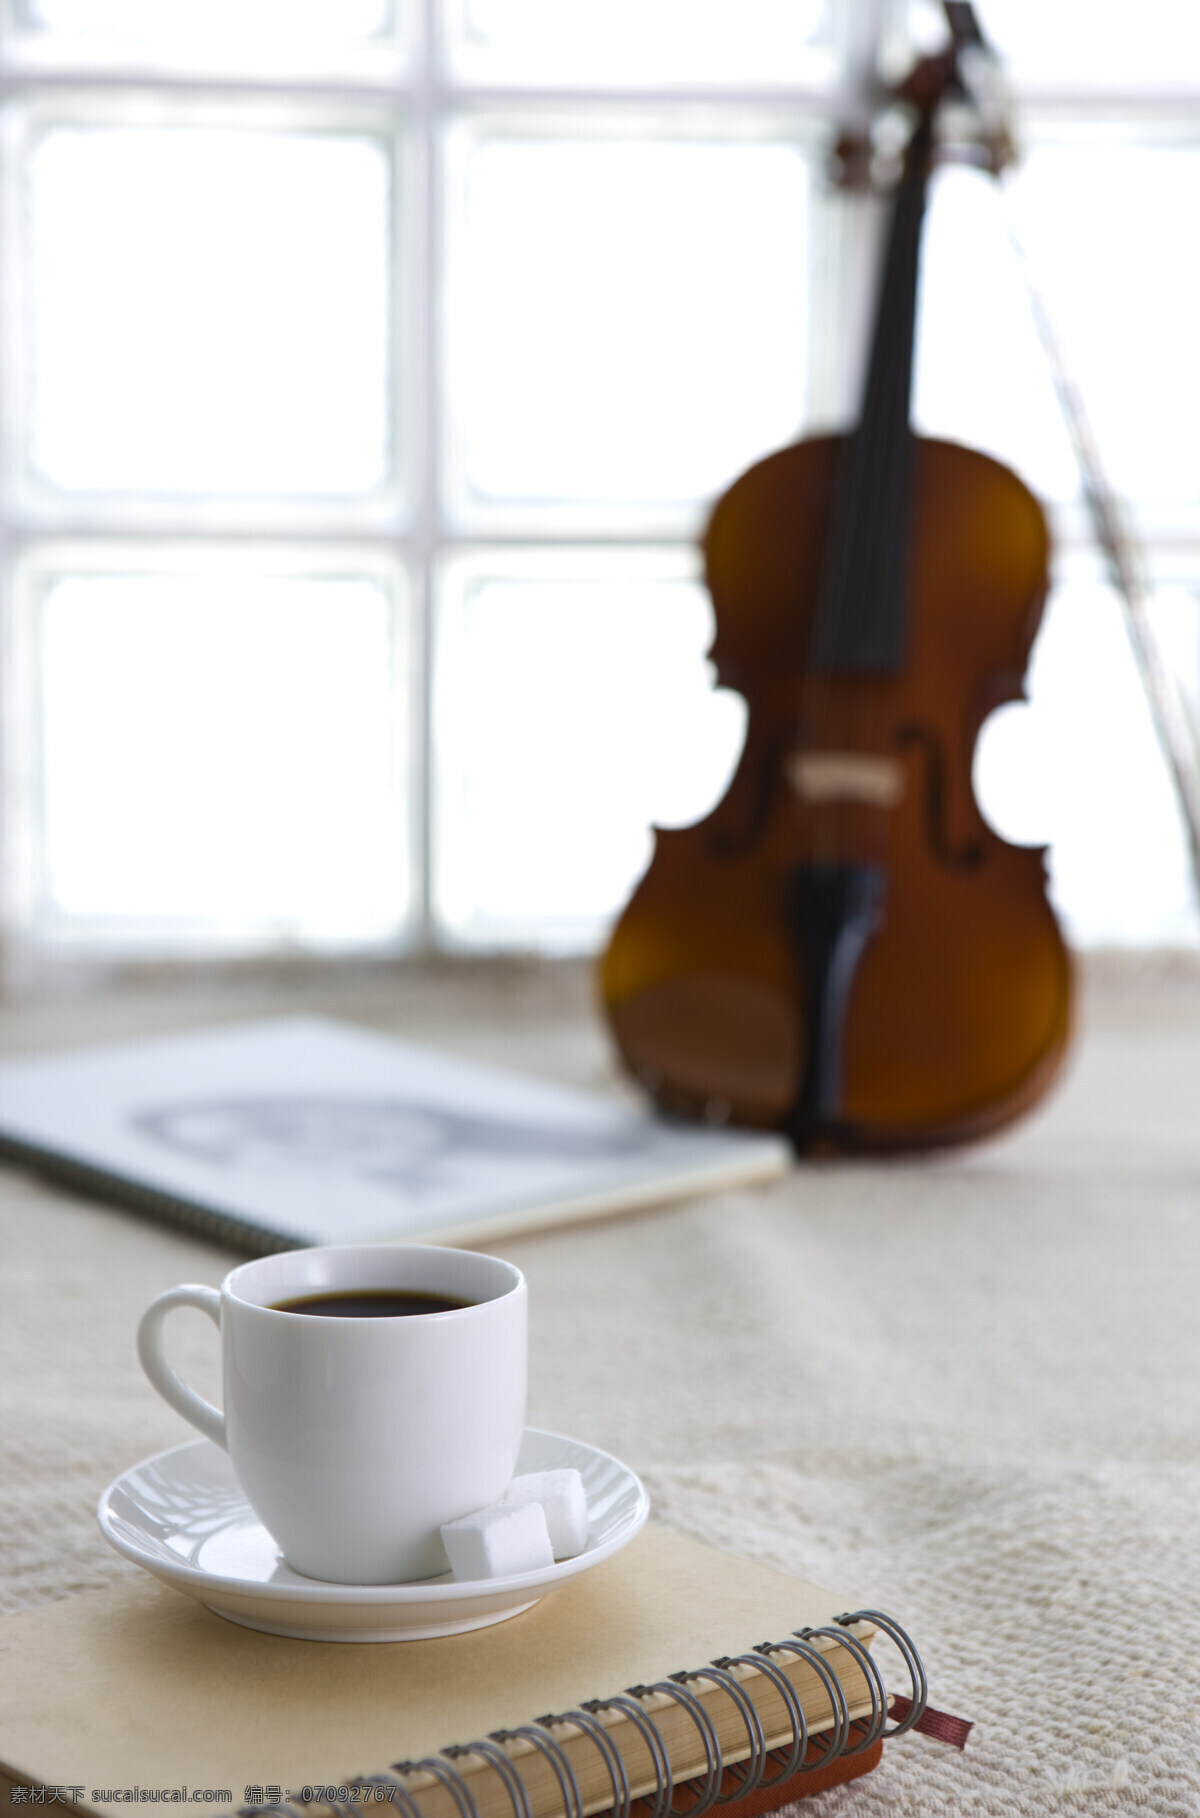 咖啡杯 记事本 咖啡 方糖 笔记本 素描本 亚麻布 小提琴 大提琴 休闲 品味生活 高清图片 咖啡图片 餐饮美食